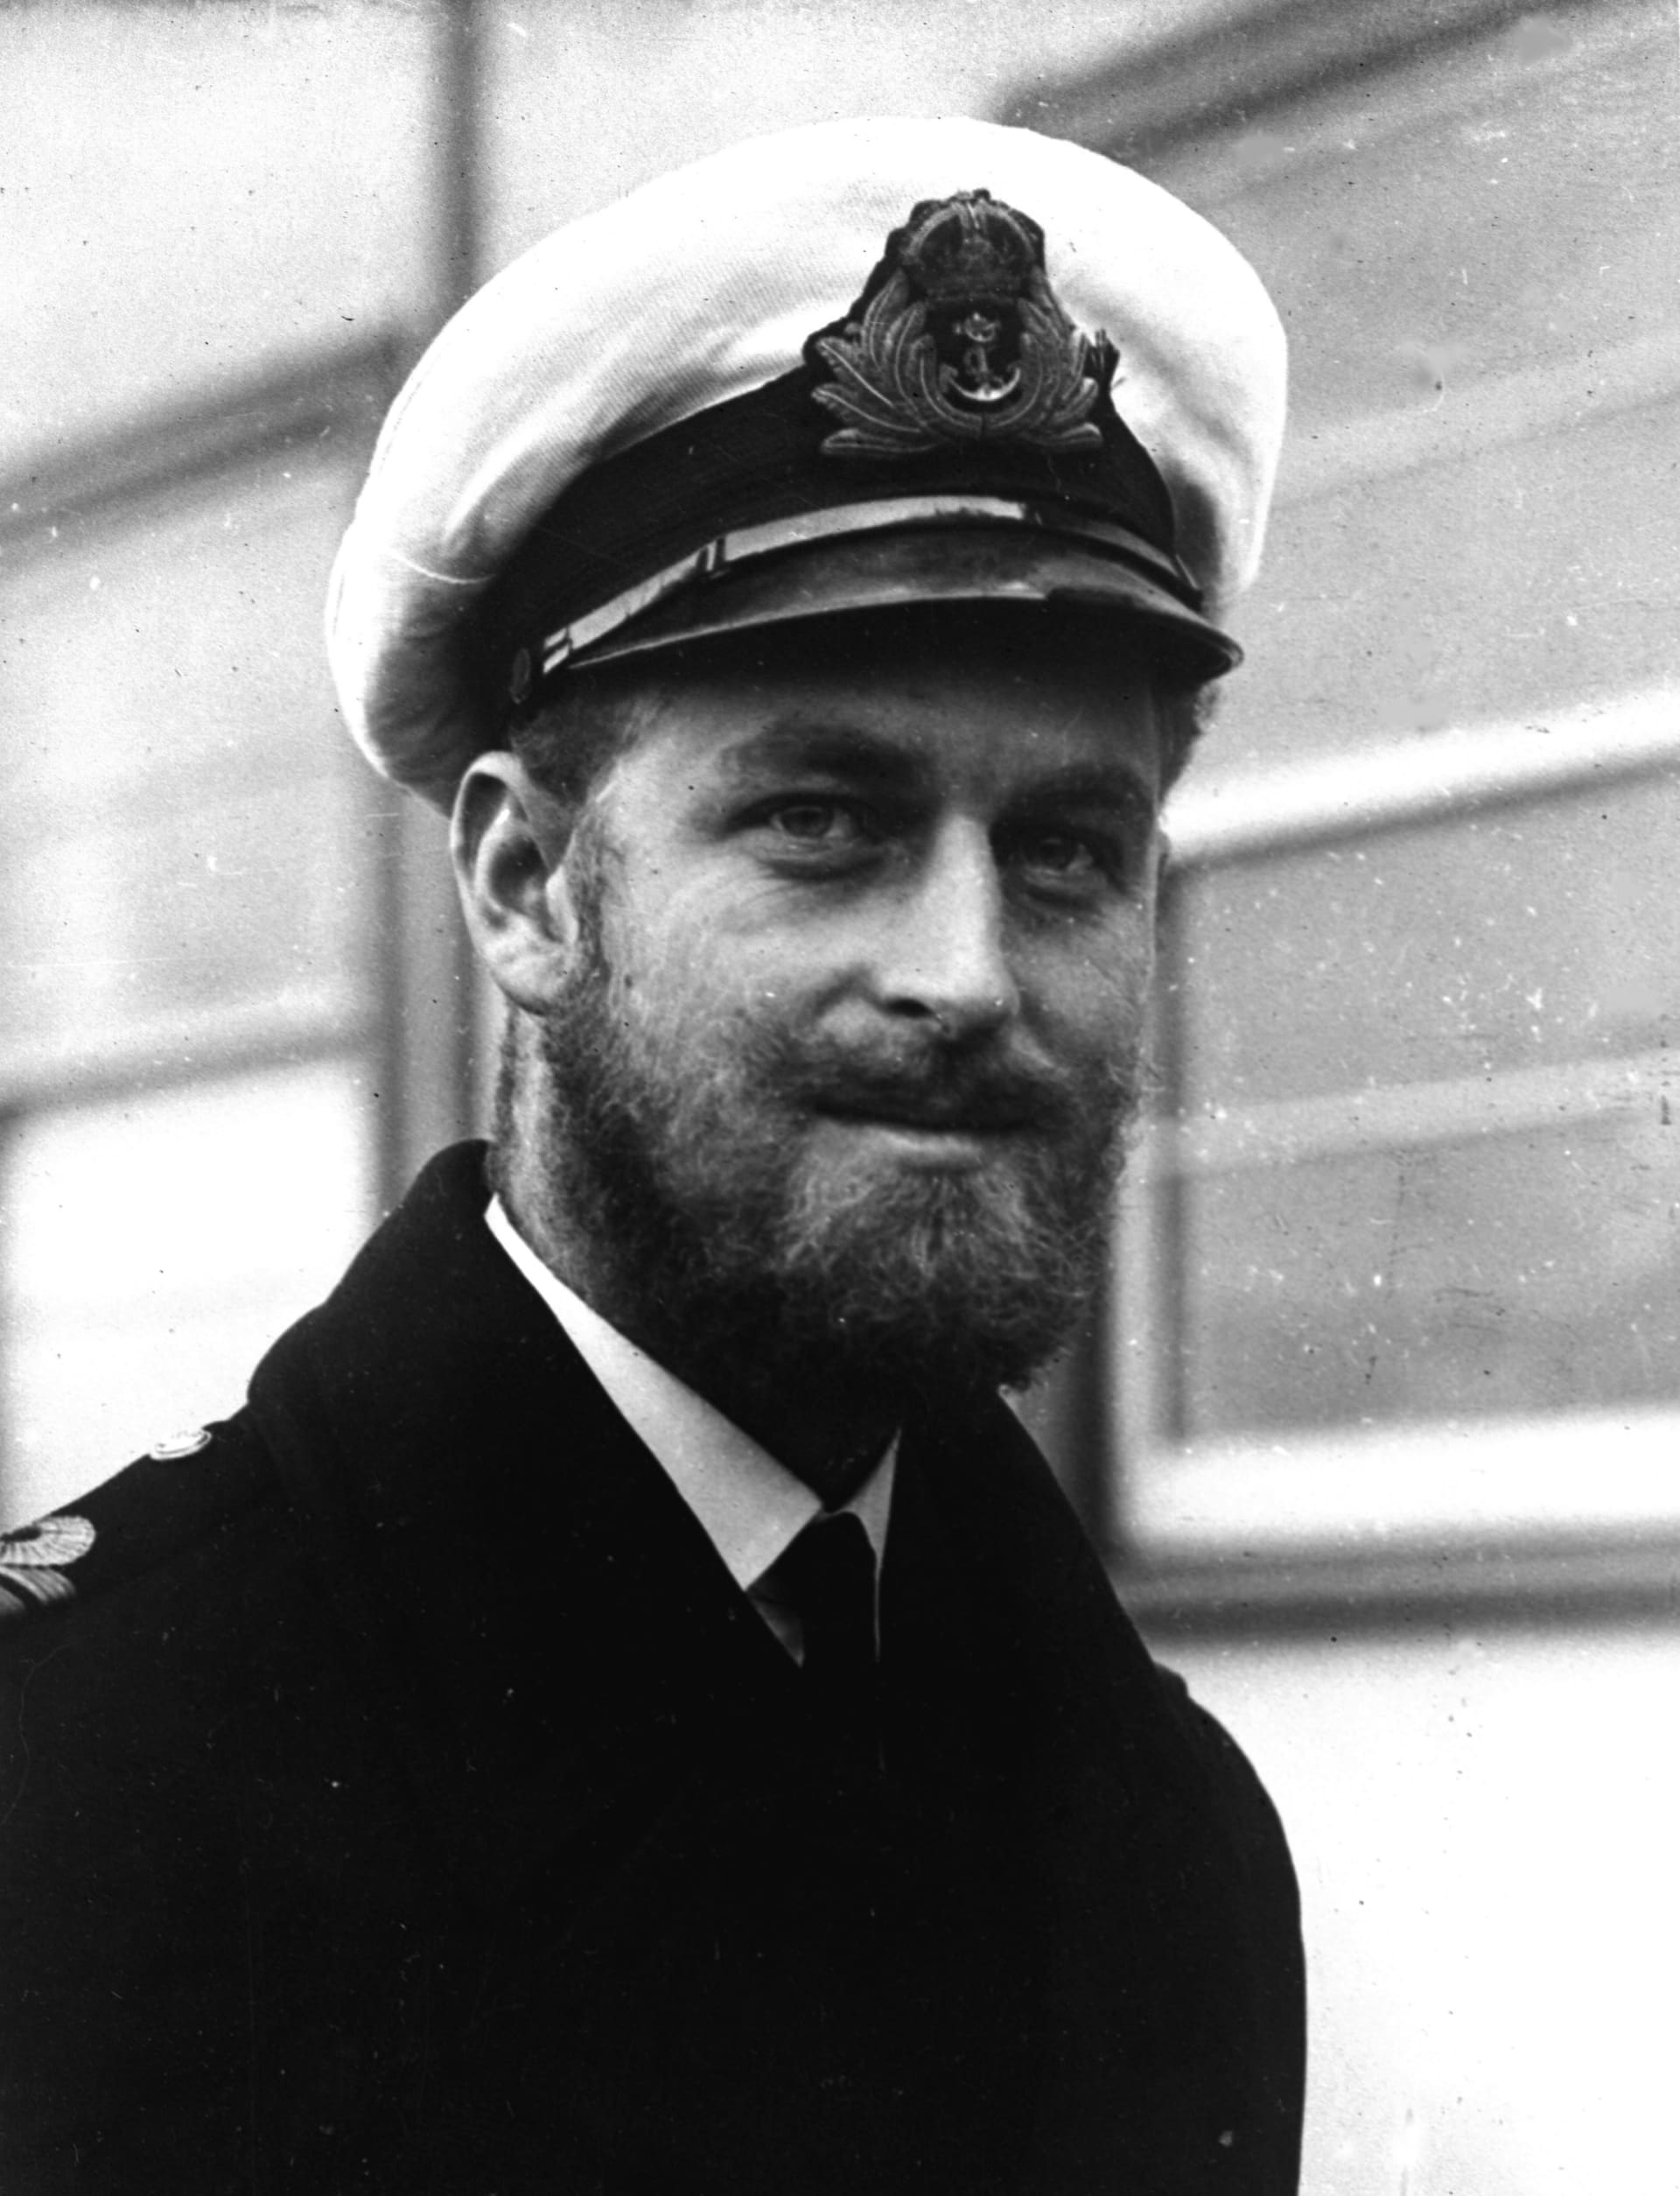 Princ Filip během námořní návštěvy australského Melbourne v roce 1945